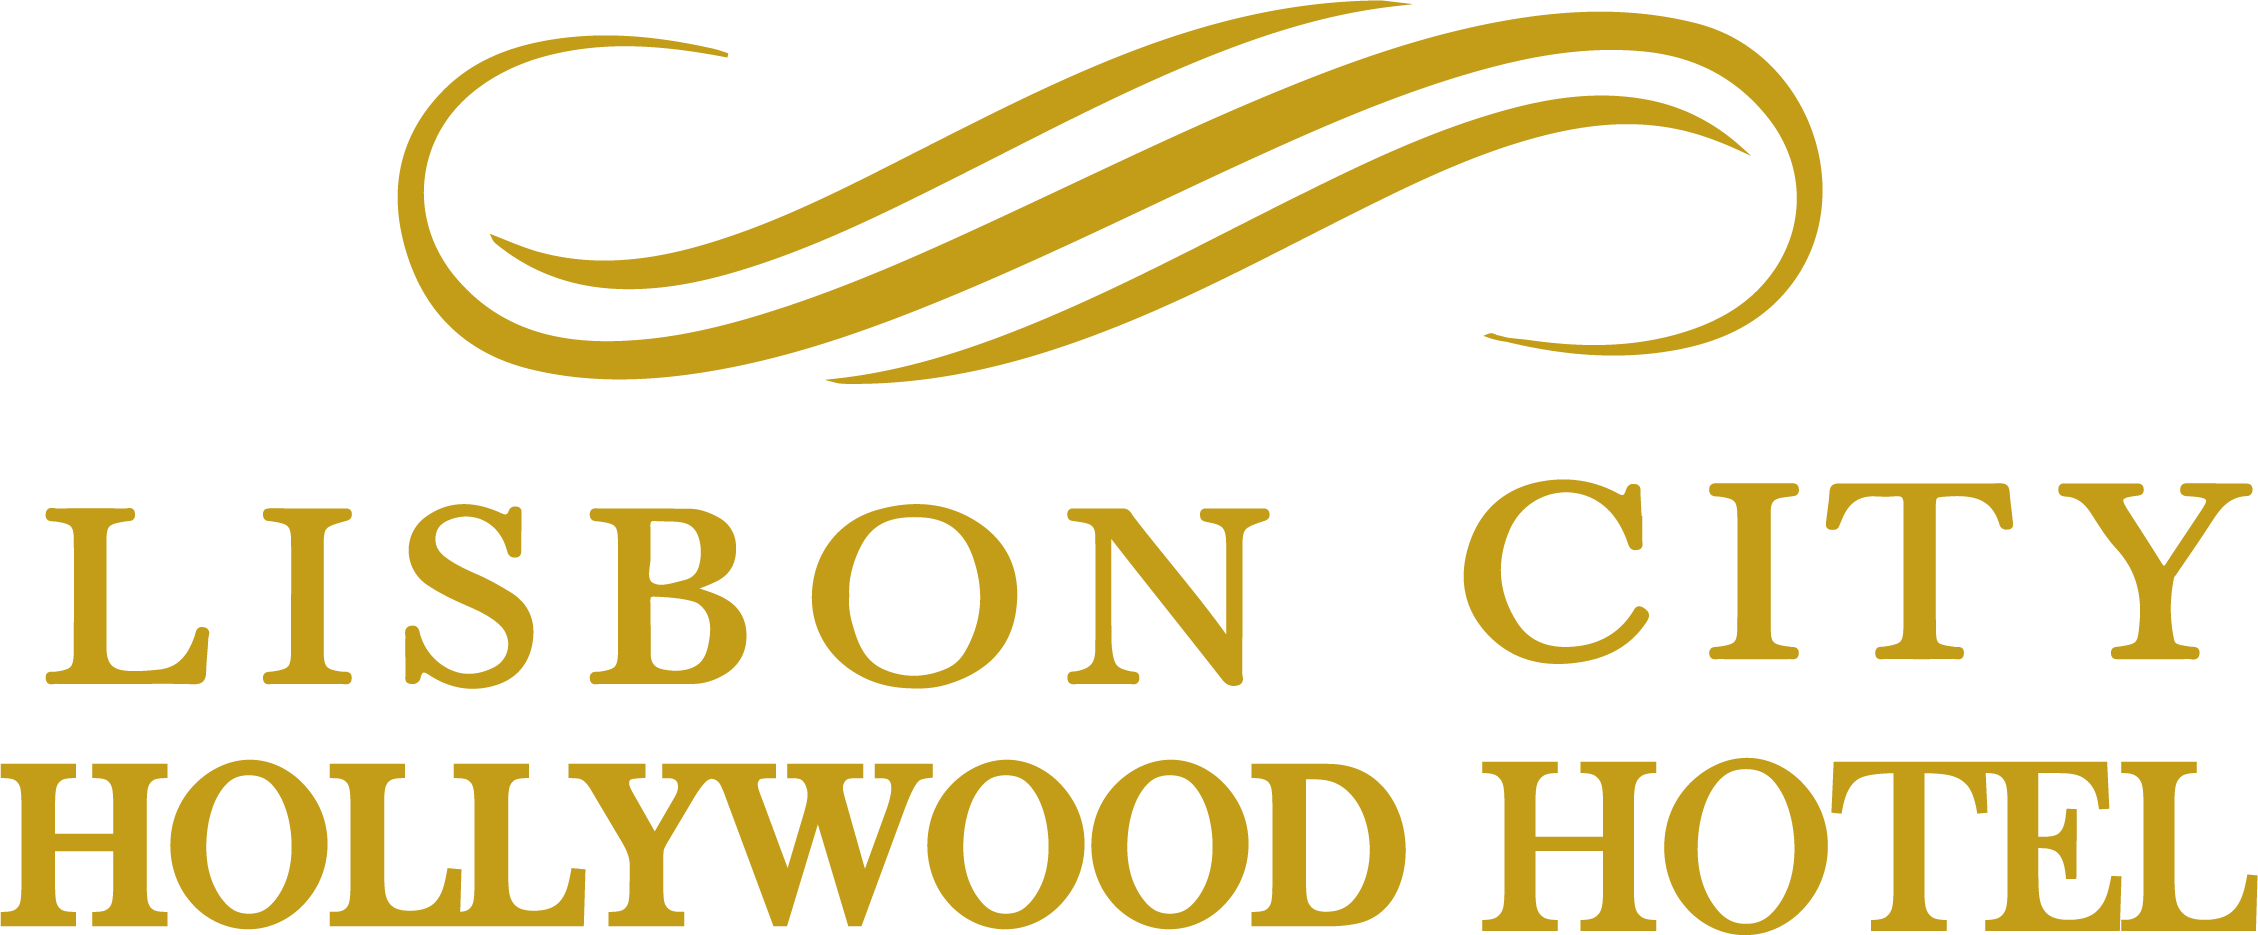 Hình ảnh có nhãn Lisbon City Hollywood Hotel Logo